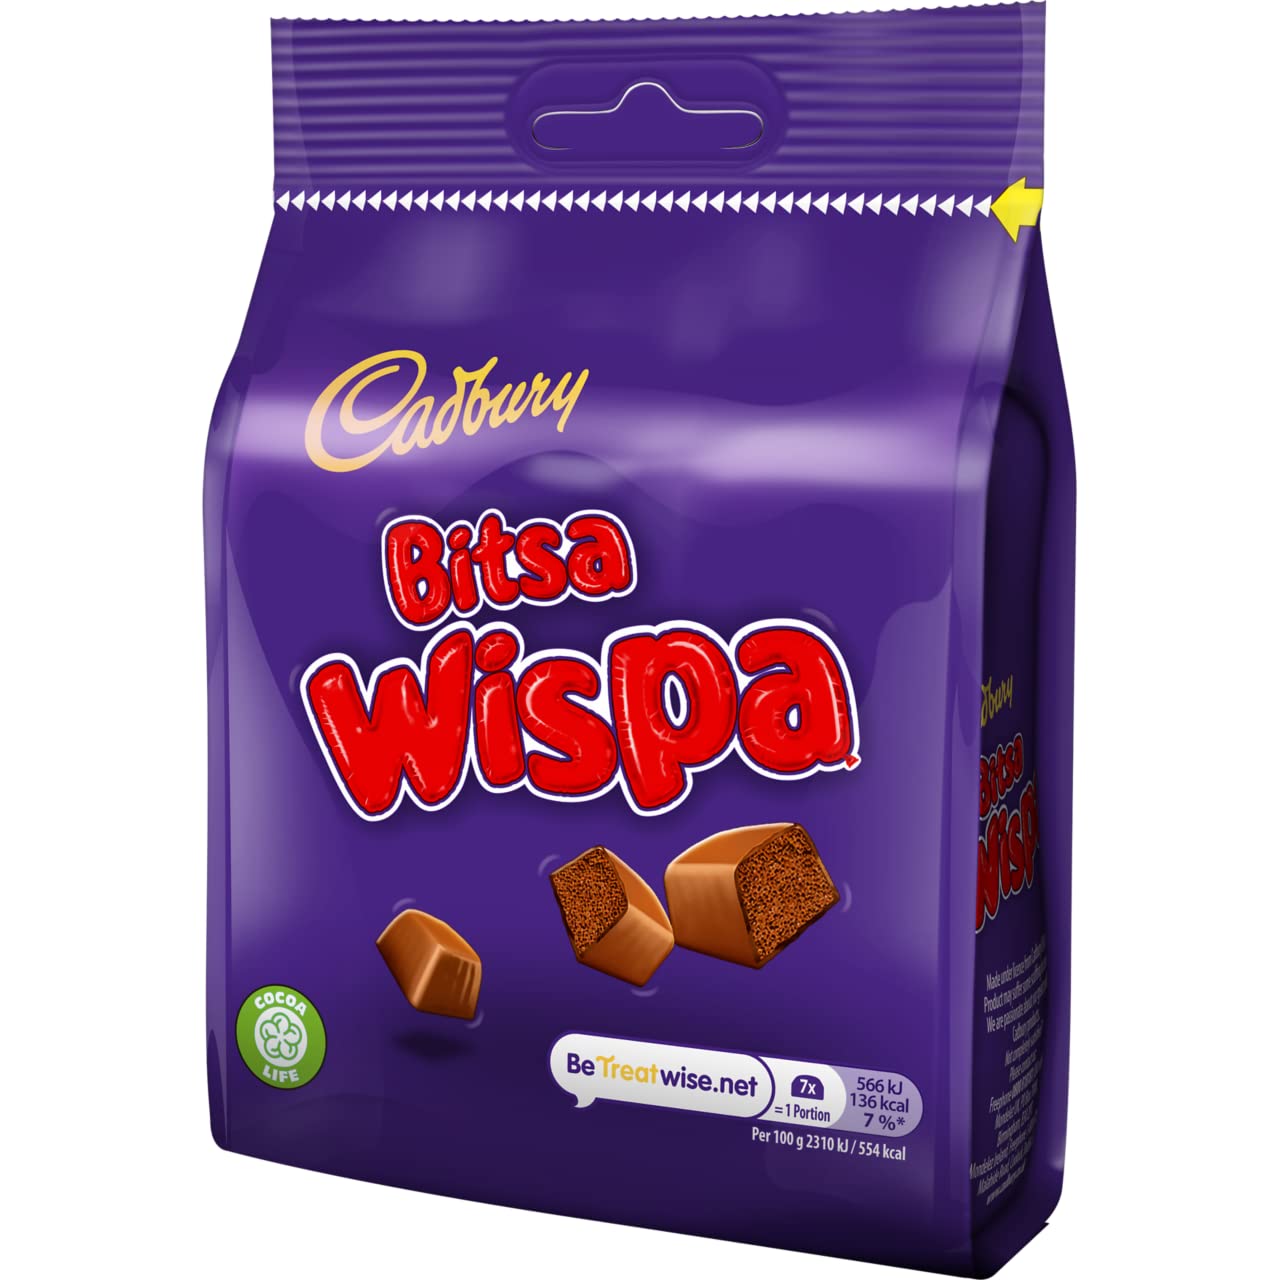 Cadbury Bitsa Wispa Chocolate - 95g